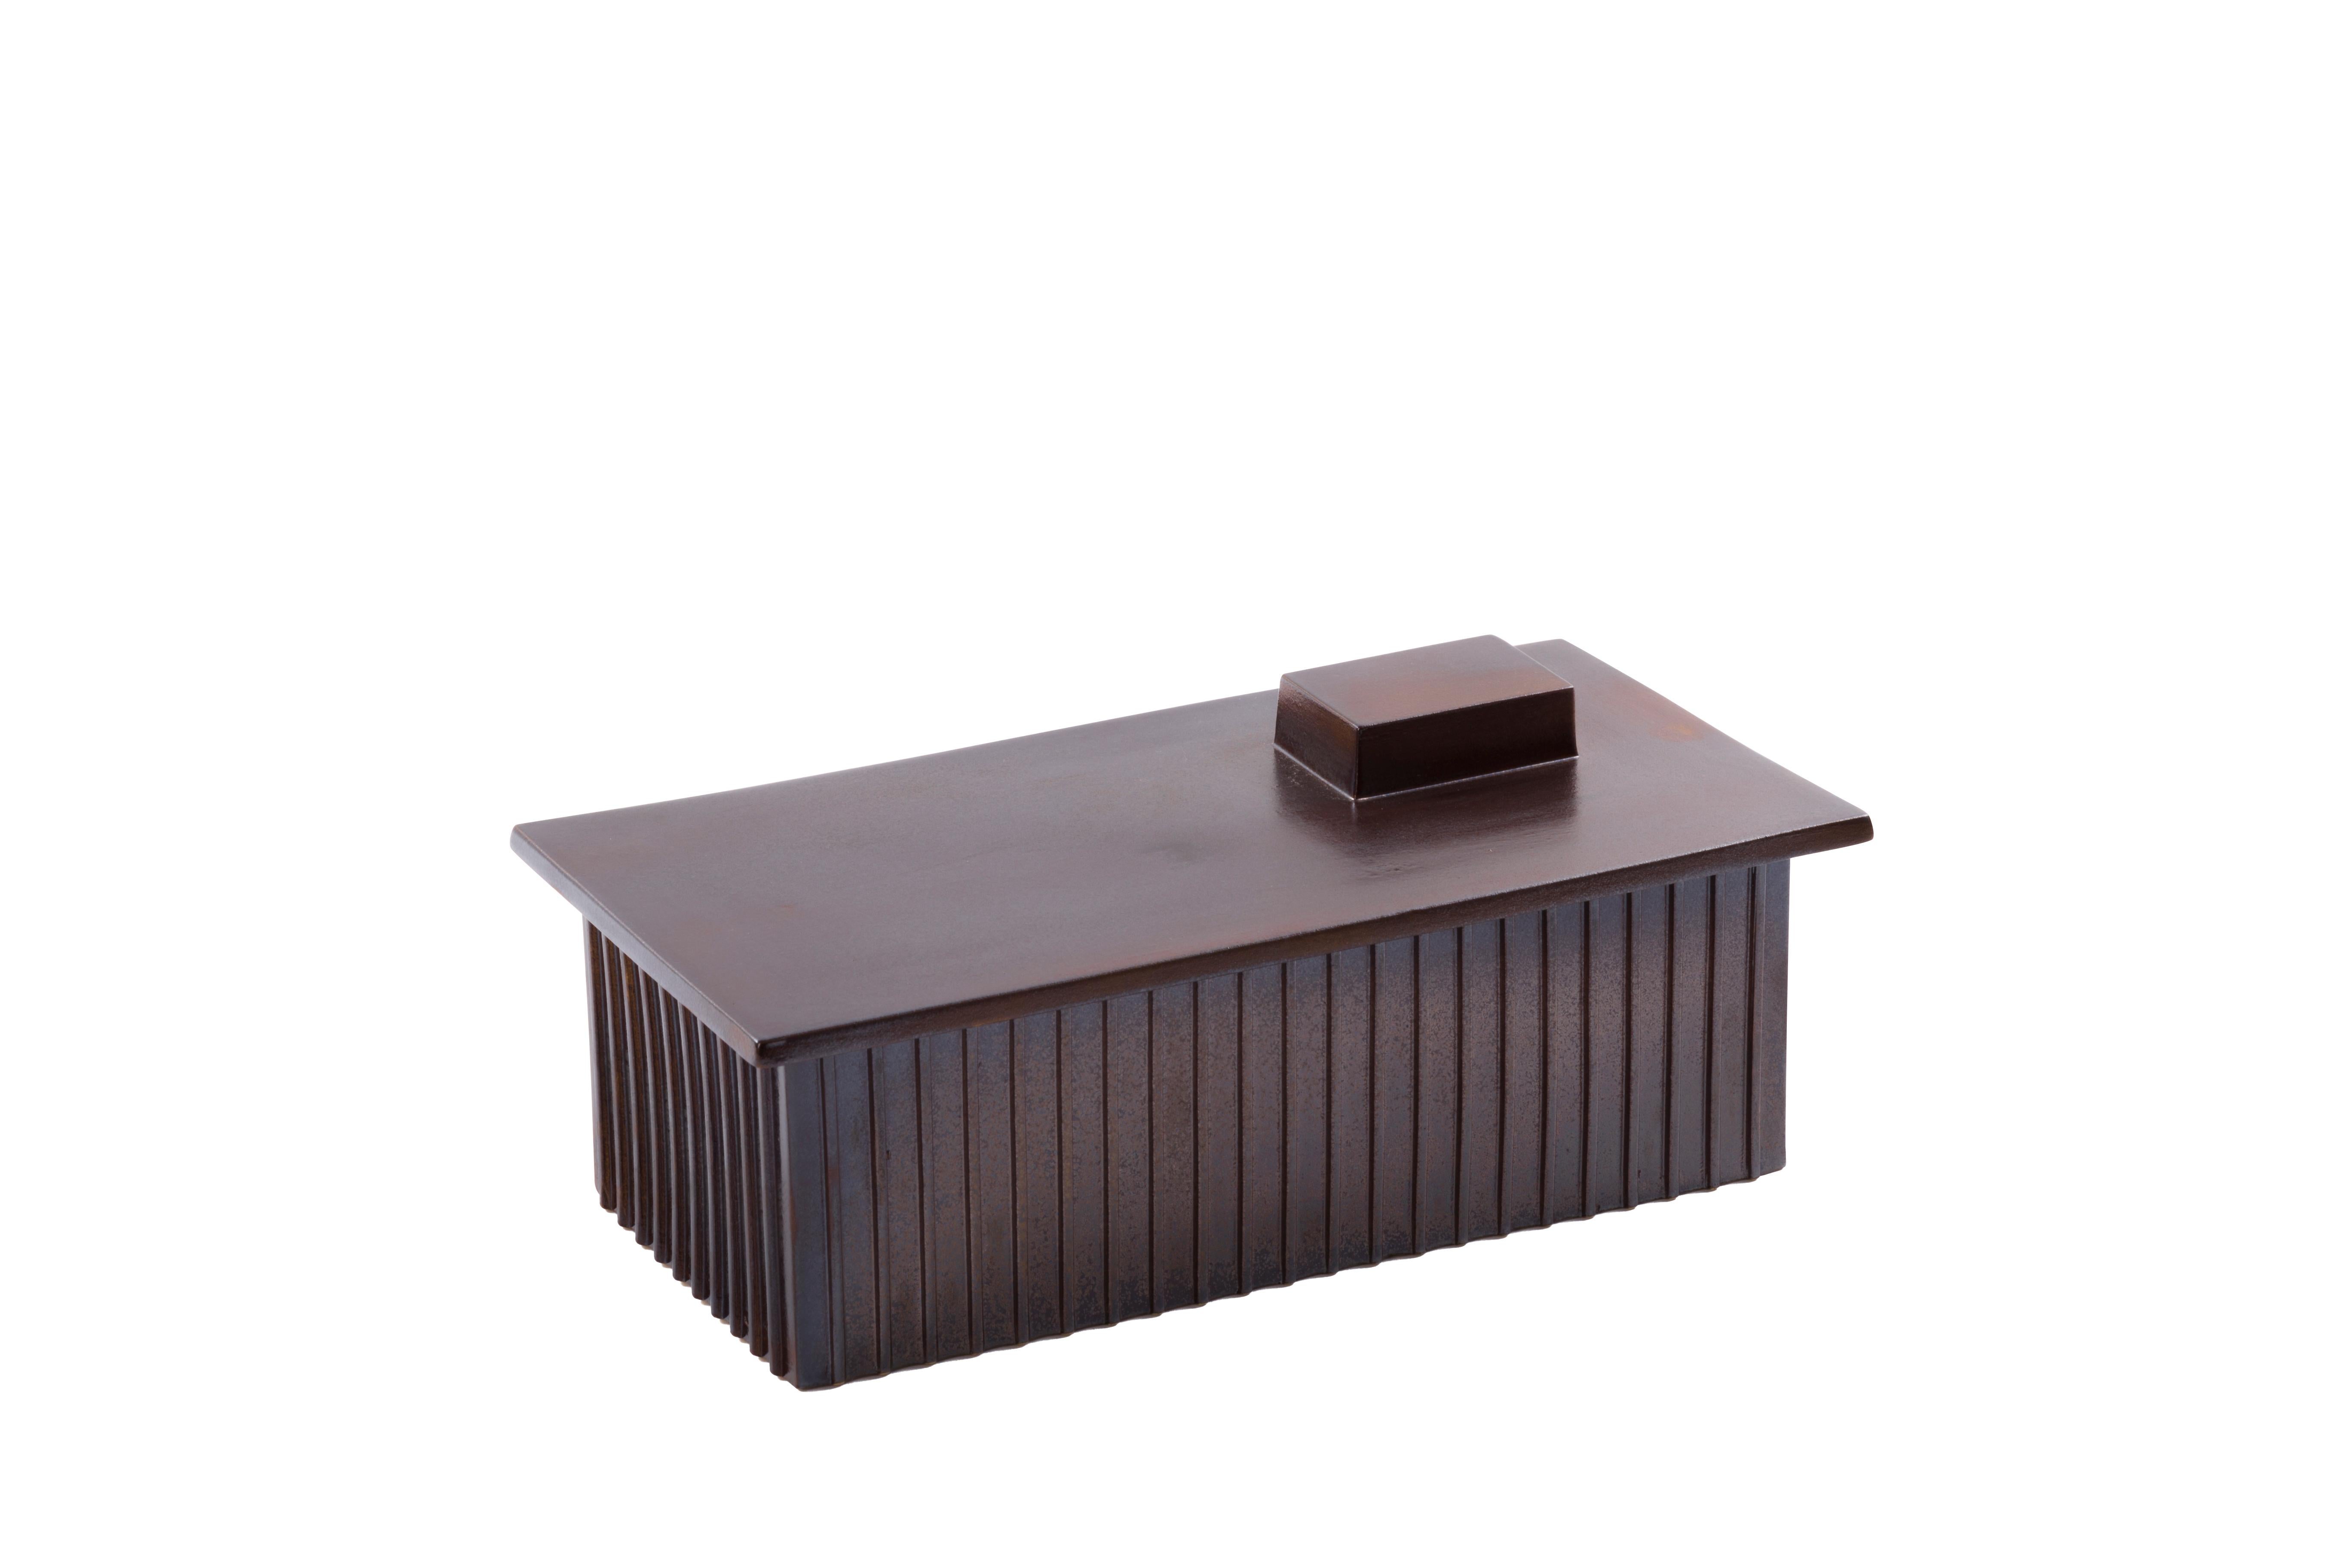 Bigli Boîte brune en métal par Pulpo
Dimensions : D32,5 x L17 x H13 cm
Matériaux : céramique

Disponible également en différentes couleurs. Veuillez nous contacter.

Les boîtes de ce bâtiment rappellent les zones industrielles si familières dans nos